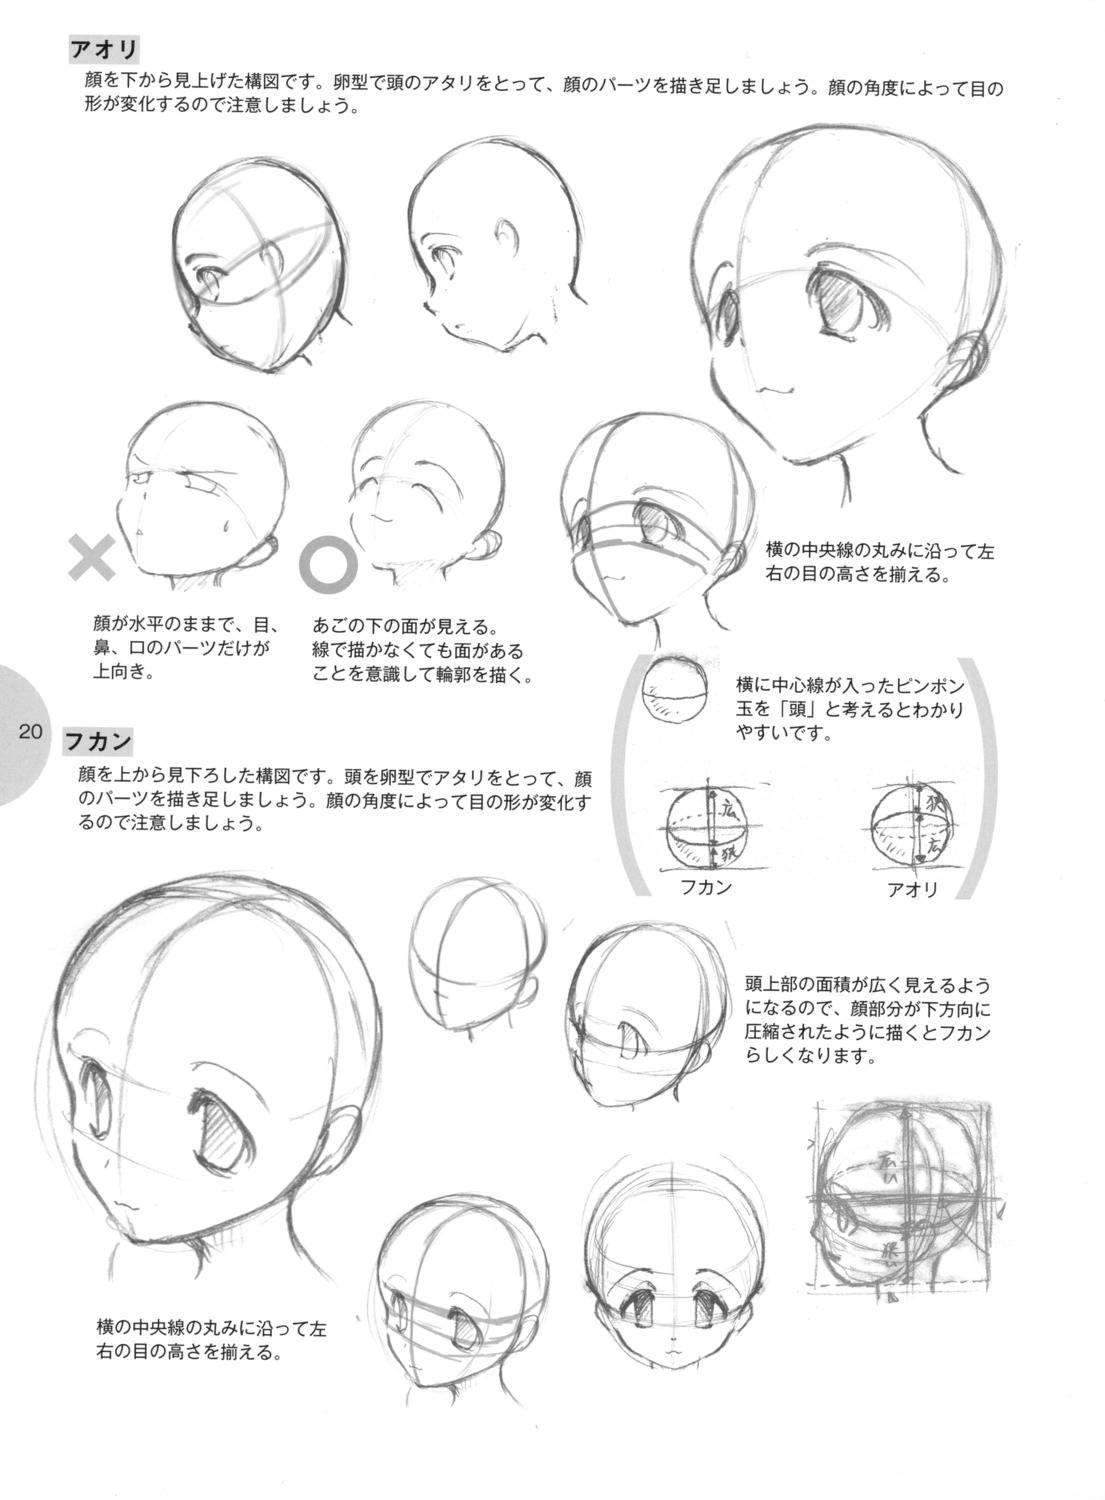 Основы рисования аниме головы